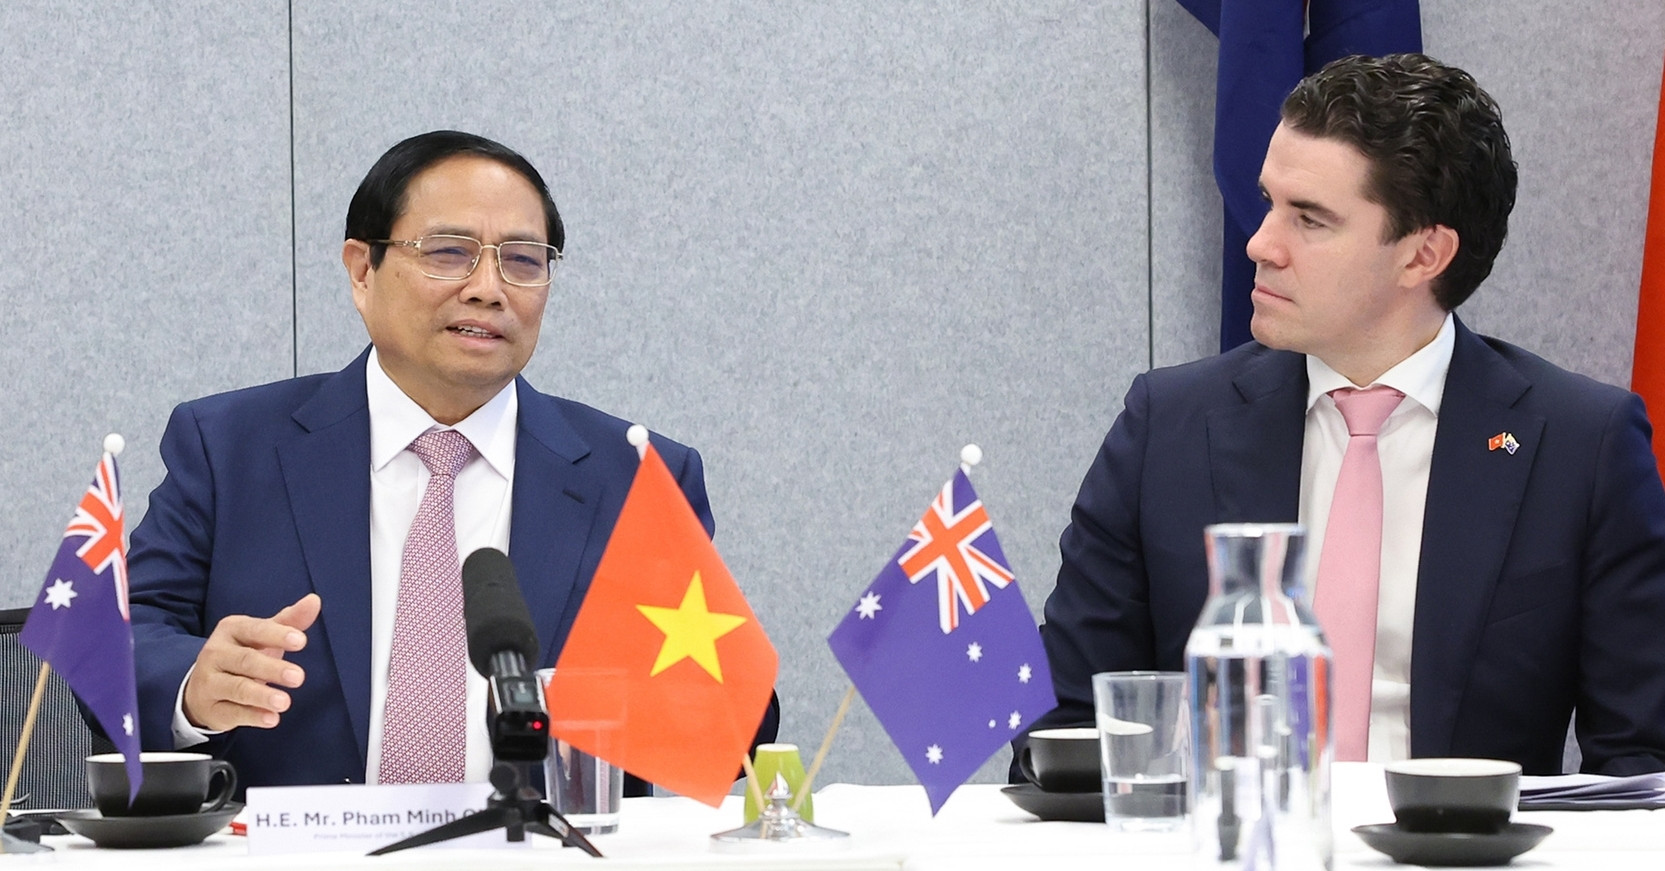 Thủ tướng Phạm Minh Chính bày tỏ ấn tượng với những thành tựu, kết quả của CSIRO và cảm ơn CSIRO đã hợp tác với Việt Nam trên nhiều lĩnh vực từ những năm 1980 khi Việt Nam còn rất nhiều khó khăn - Ảnh: VGP/Nhật Bắc